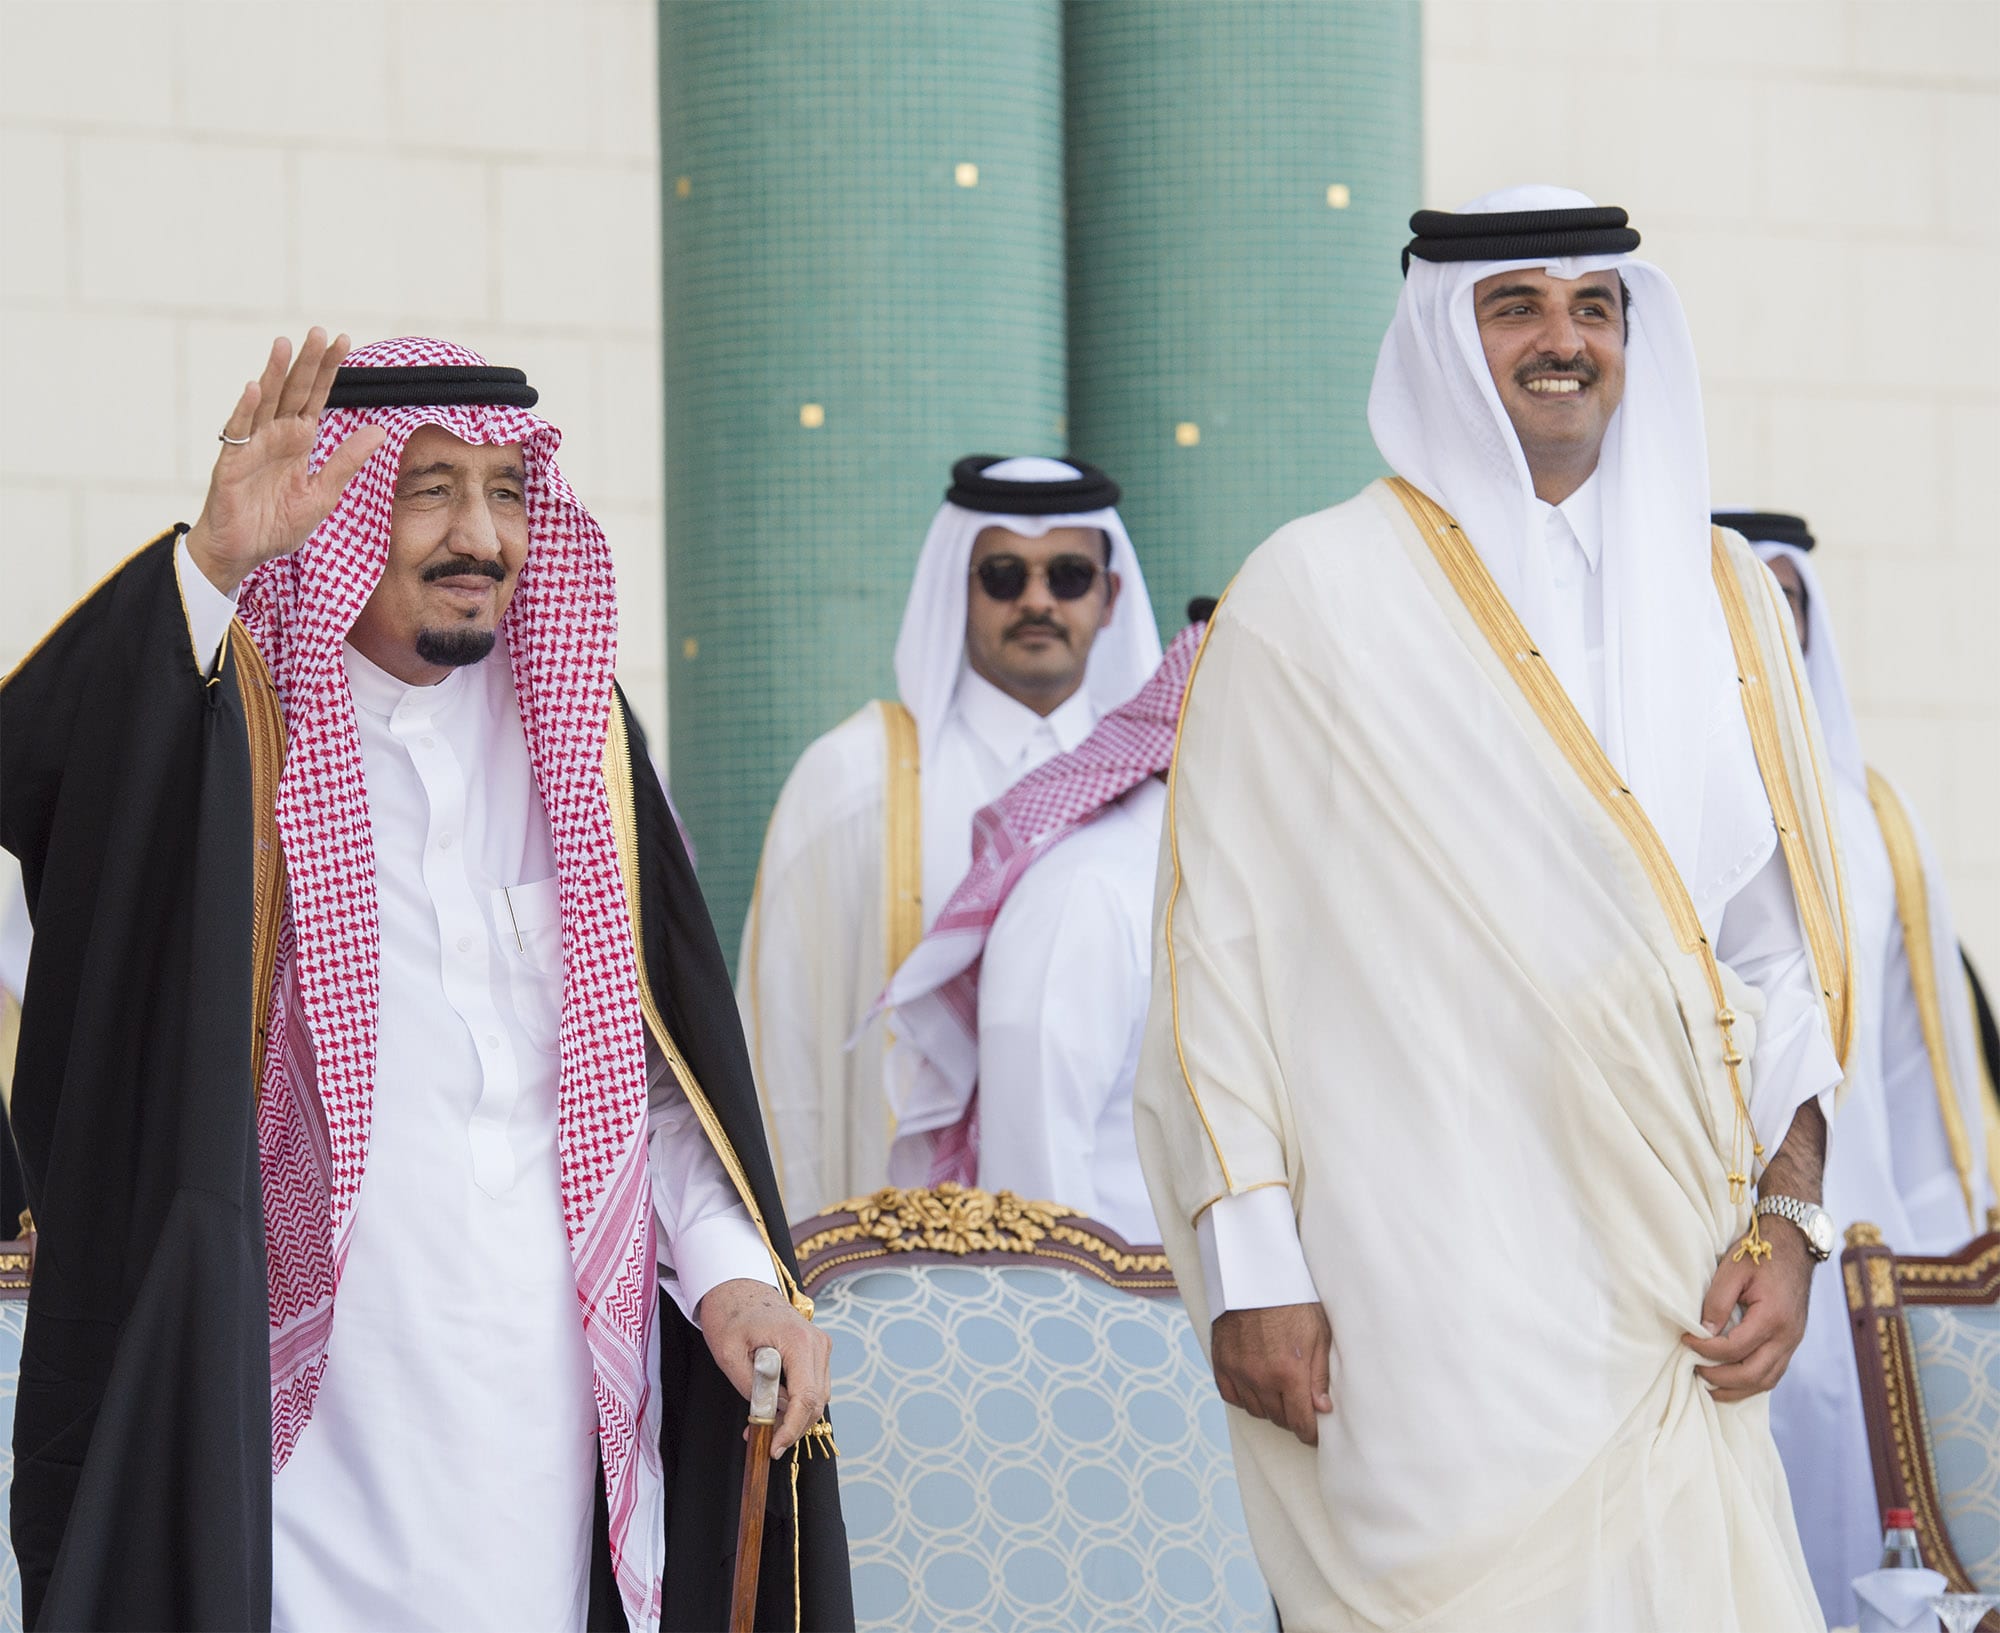 Правление в саудовской аравии. Катар арабы-катарцы. Доха Саудовская Аравия. Шейх одежда Саудовская Аравия. Белая одежда Катар.